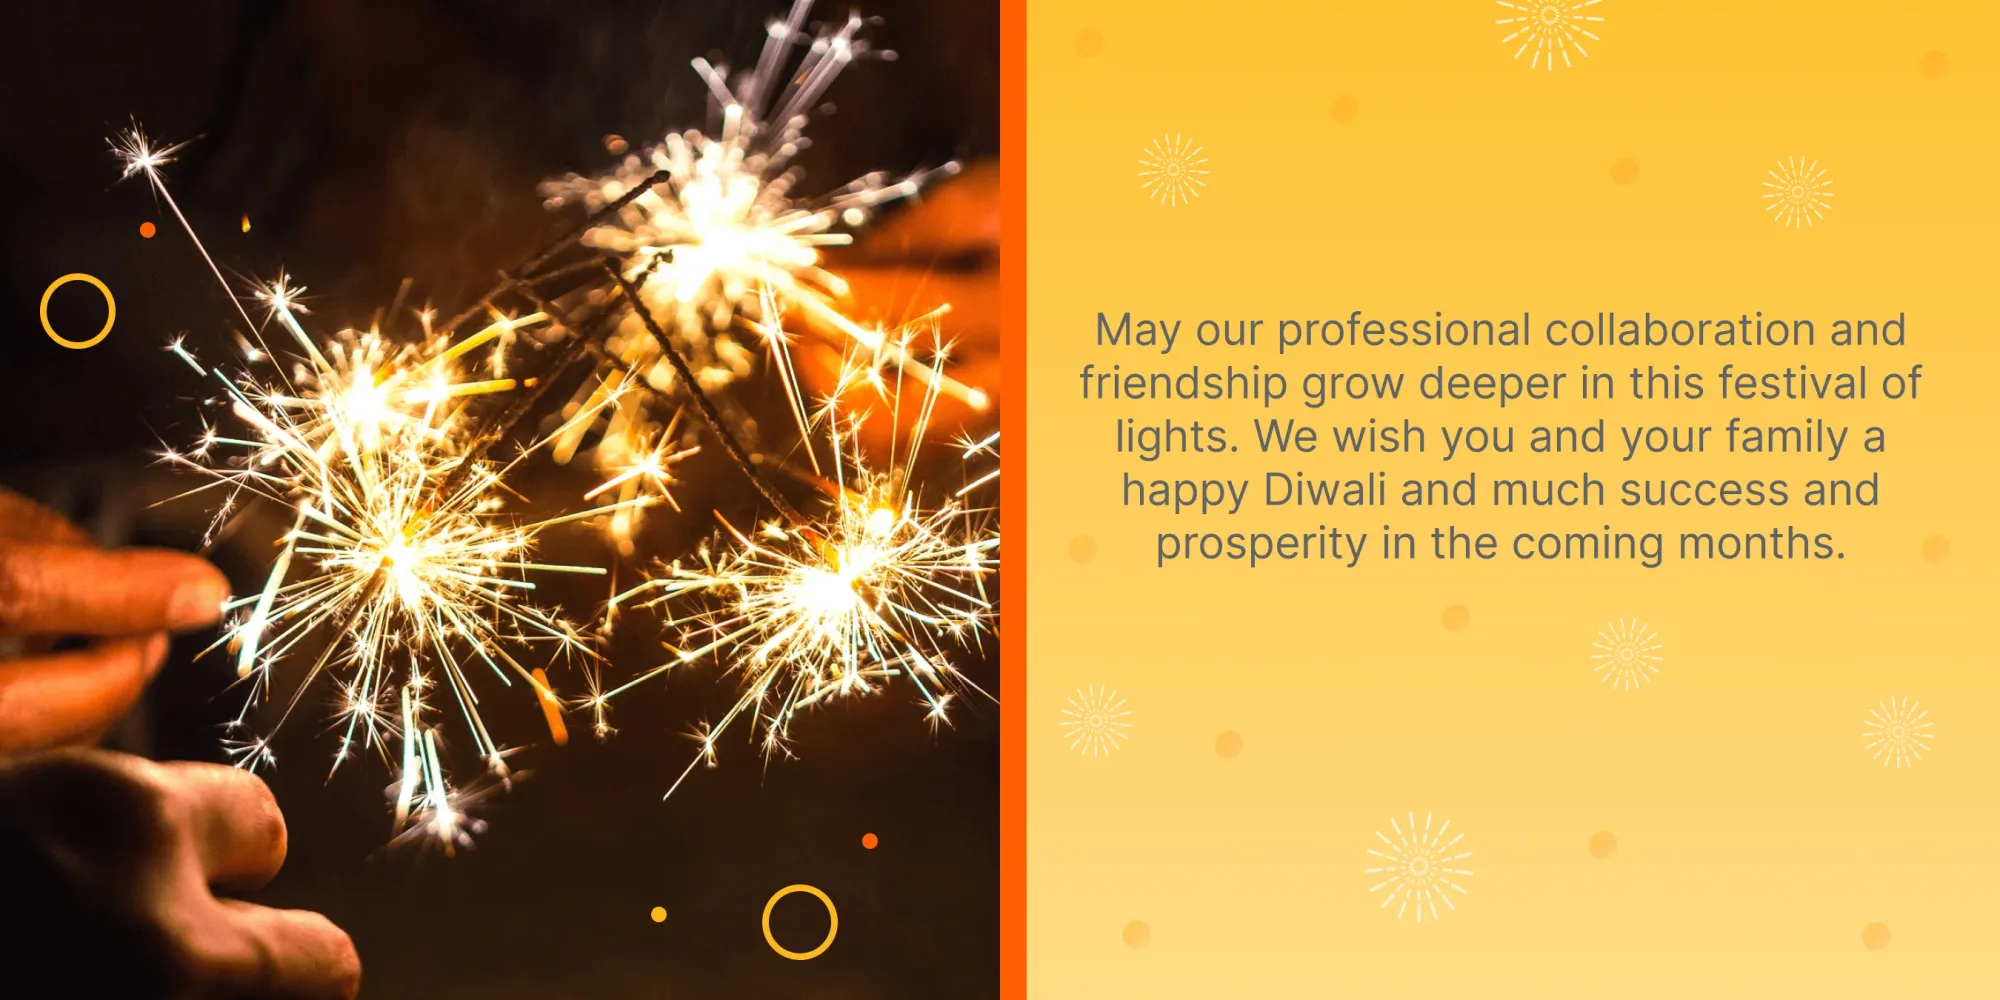 Souhaits de bonne fête de Diwali pour les clients